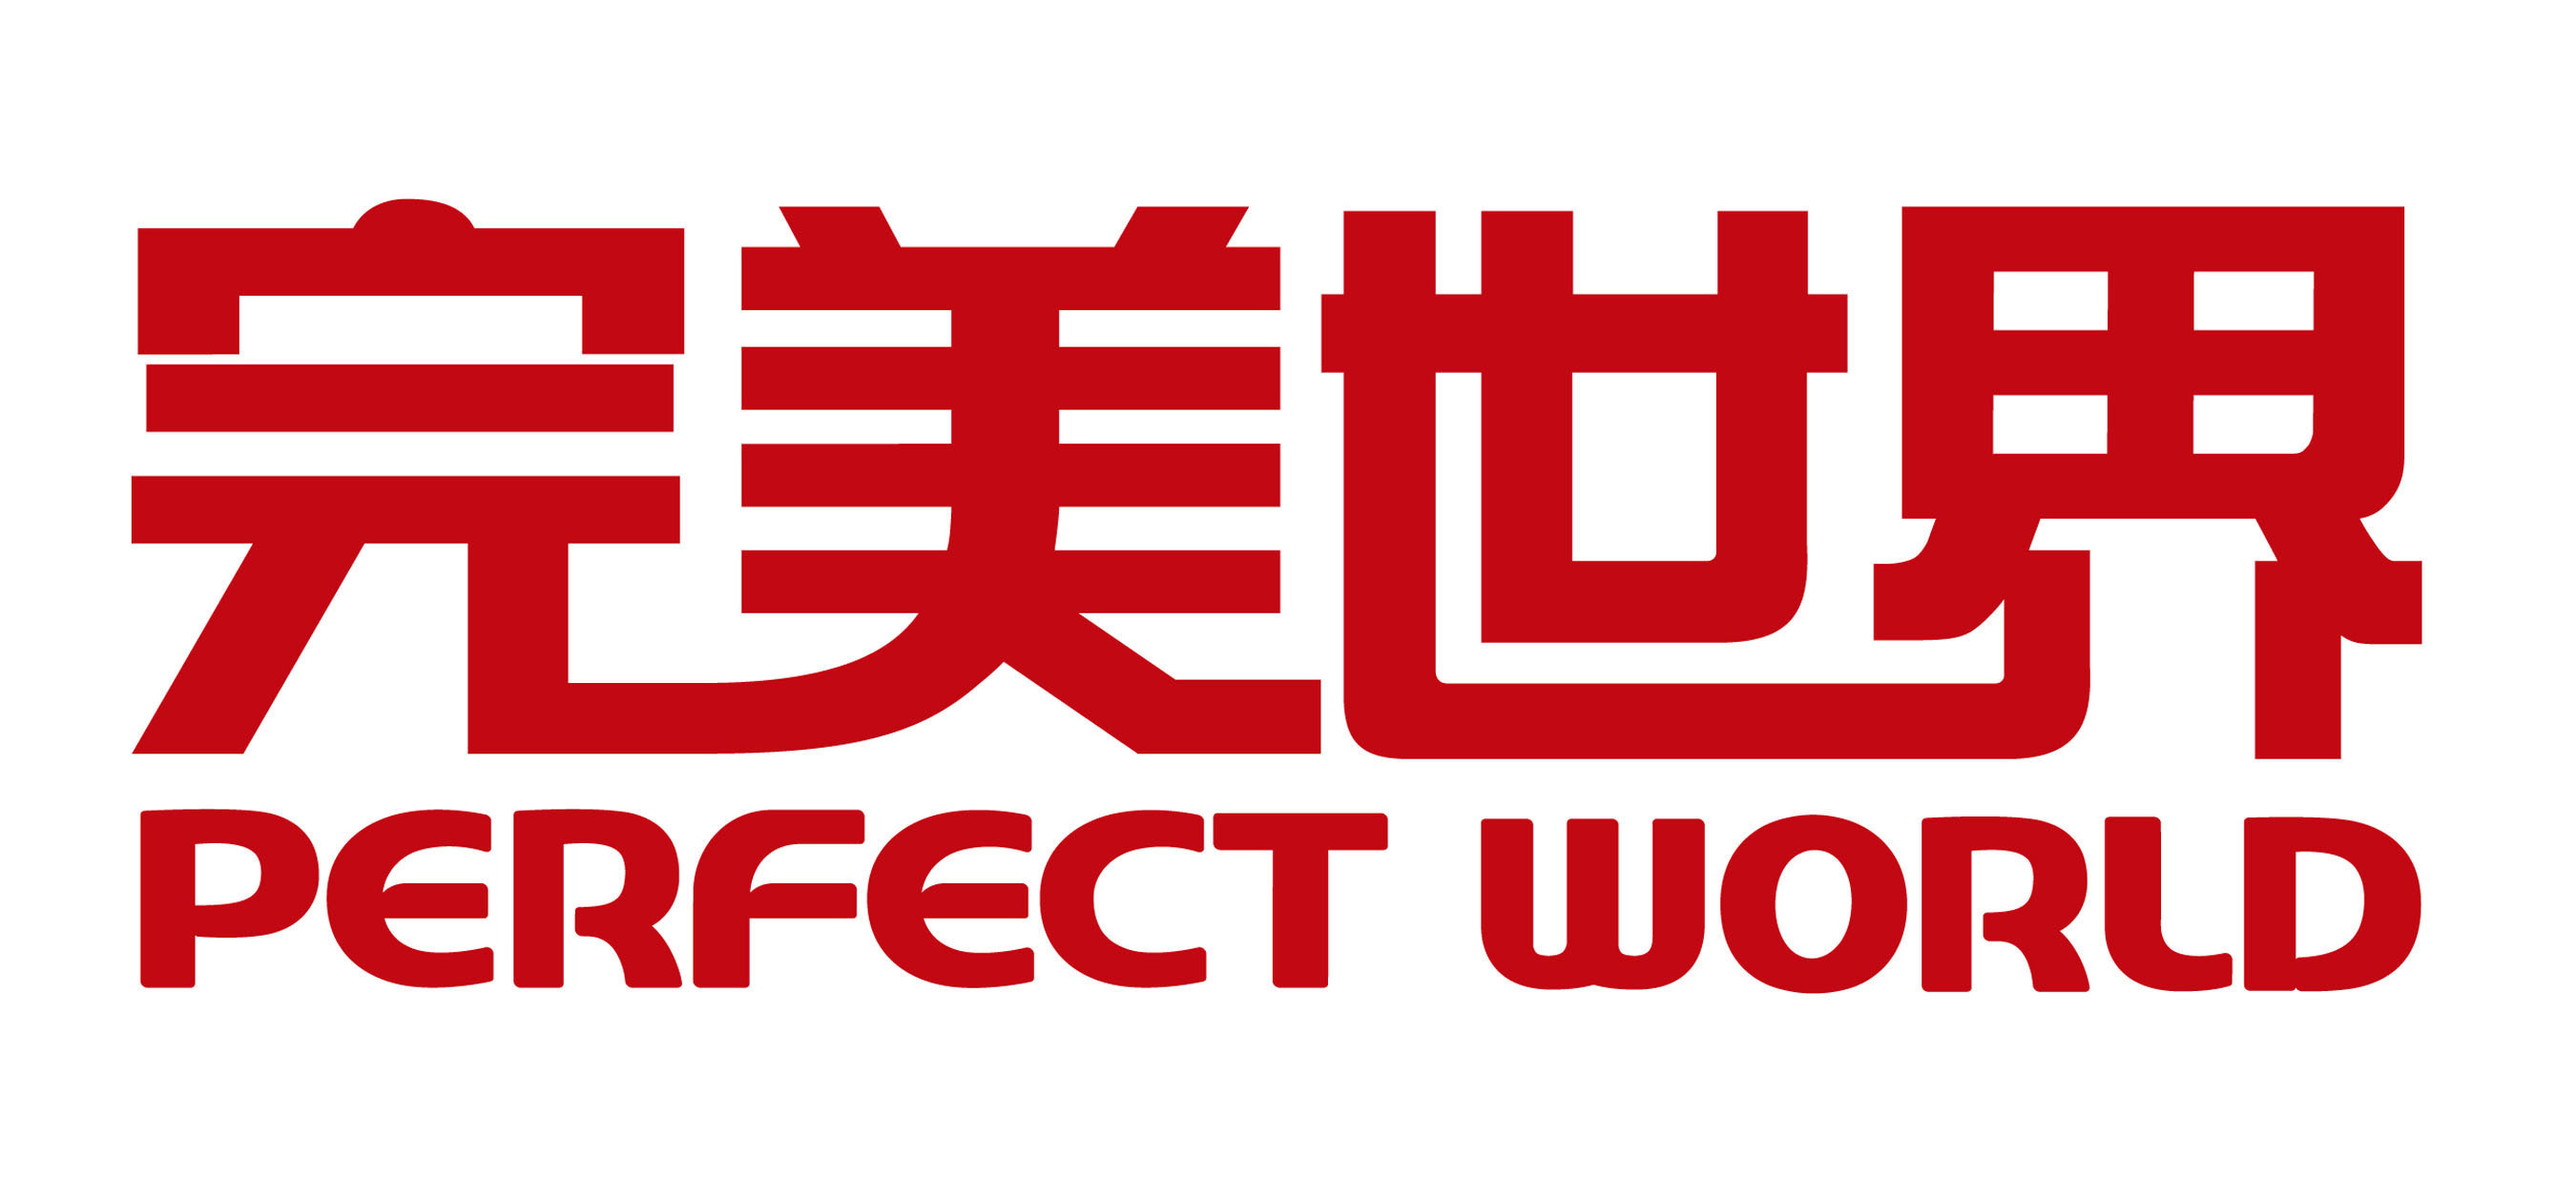 Perfect World LOGO. (PRNewsFoto/Perfect World Co., Ltd.) (PRNewsFoto/)